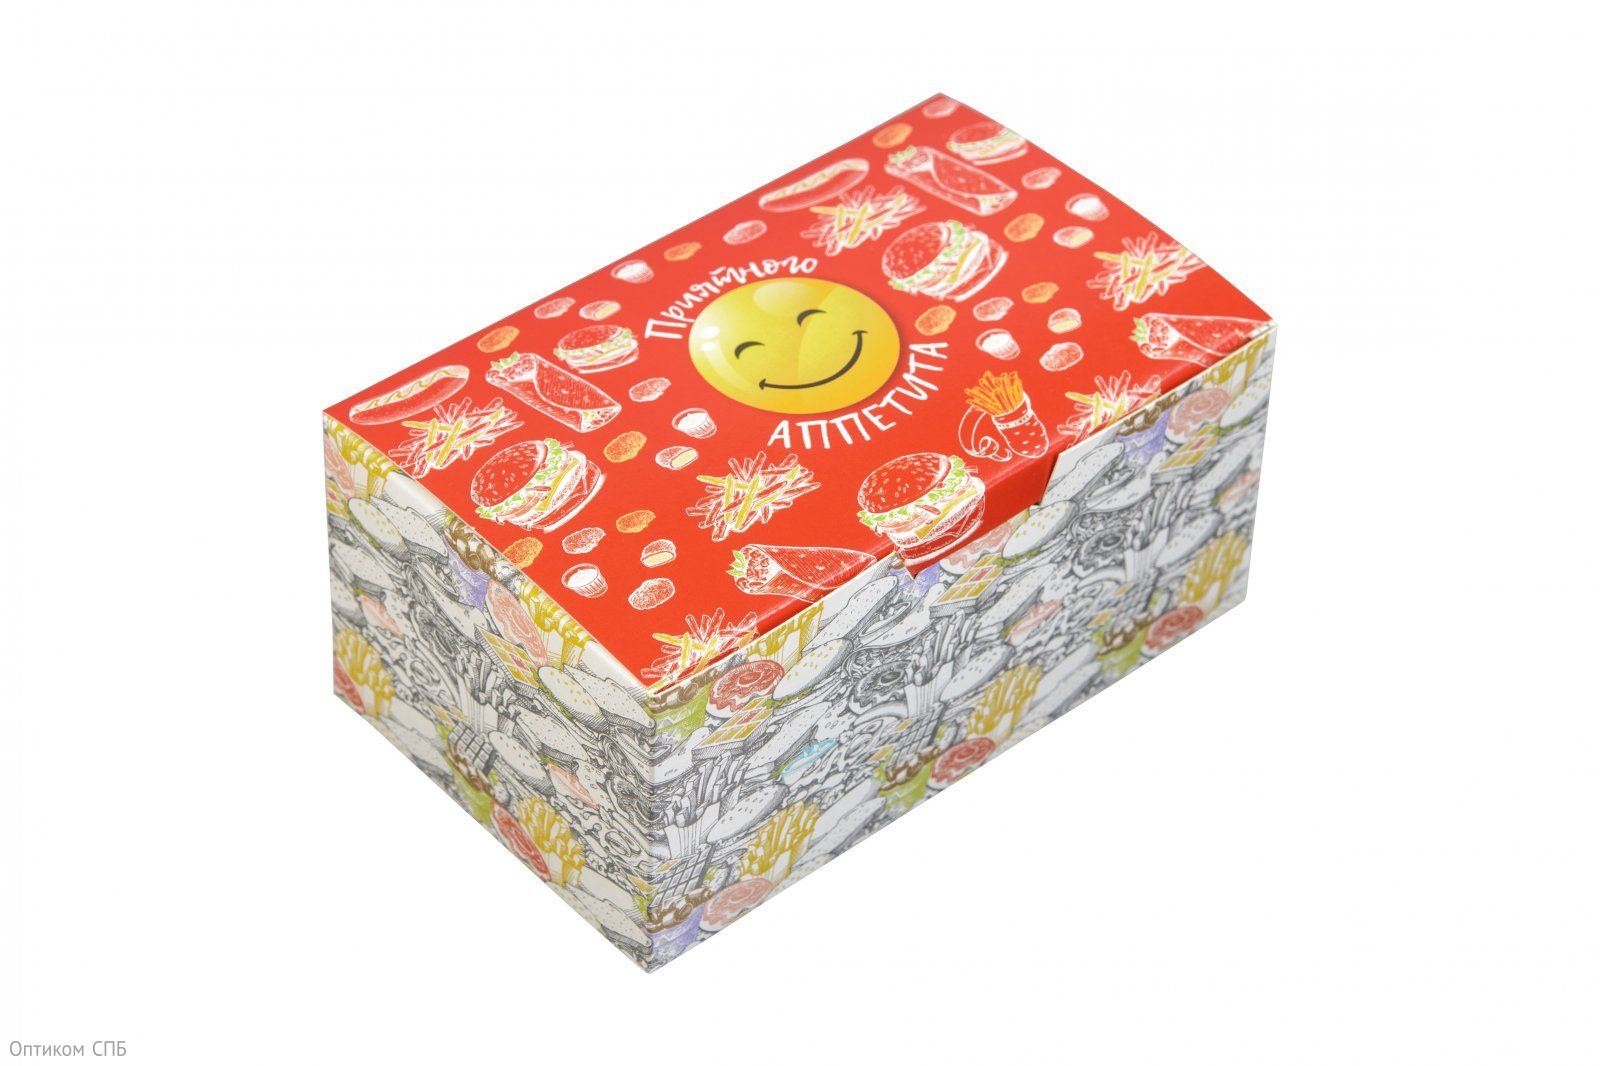 Коробка для еды навынос Оригамо "Smile", изготовлена из картона. С внешней стороны нанесен рисунок. Можно использовать для разогрева еды в микроволновой печи. Размер 150х91х70 мм. В коробке 200 штук.